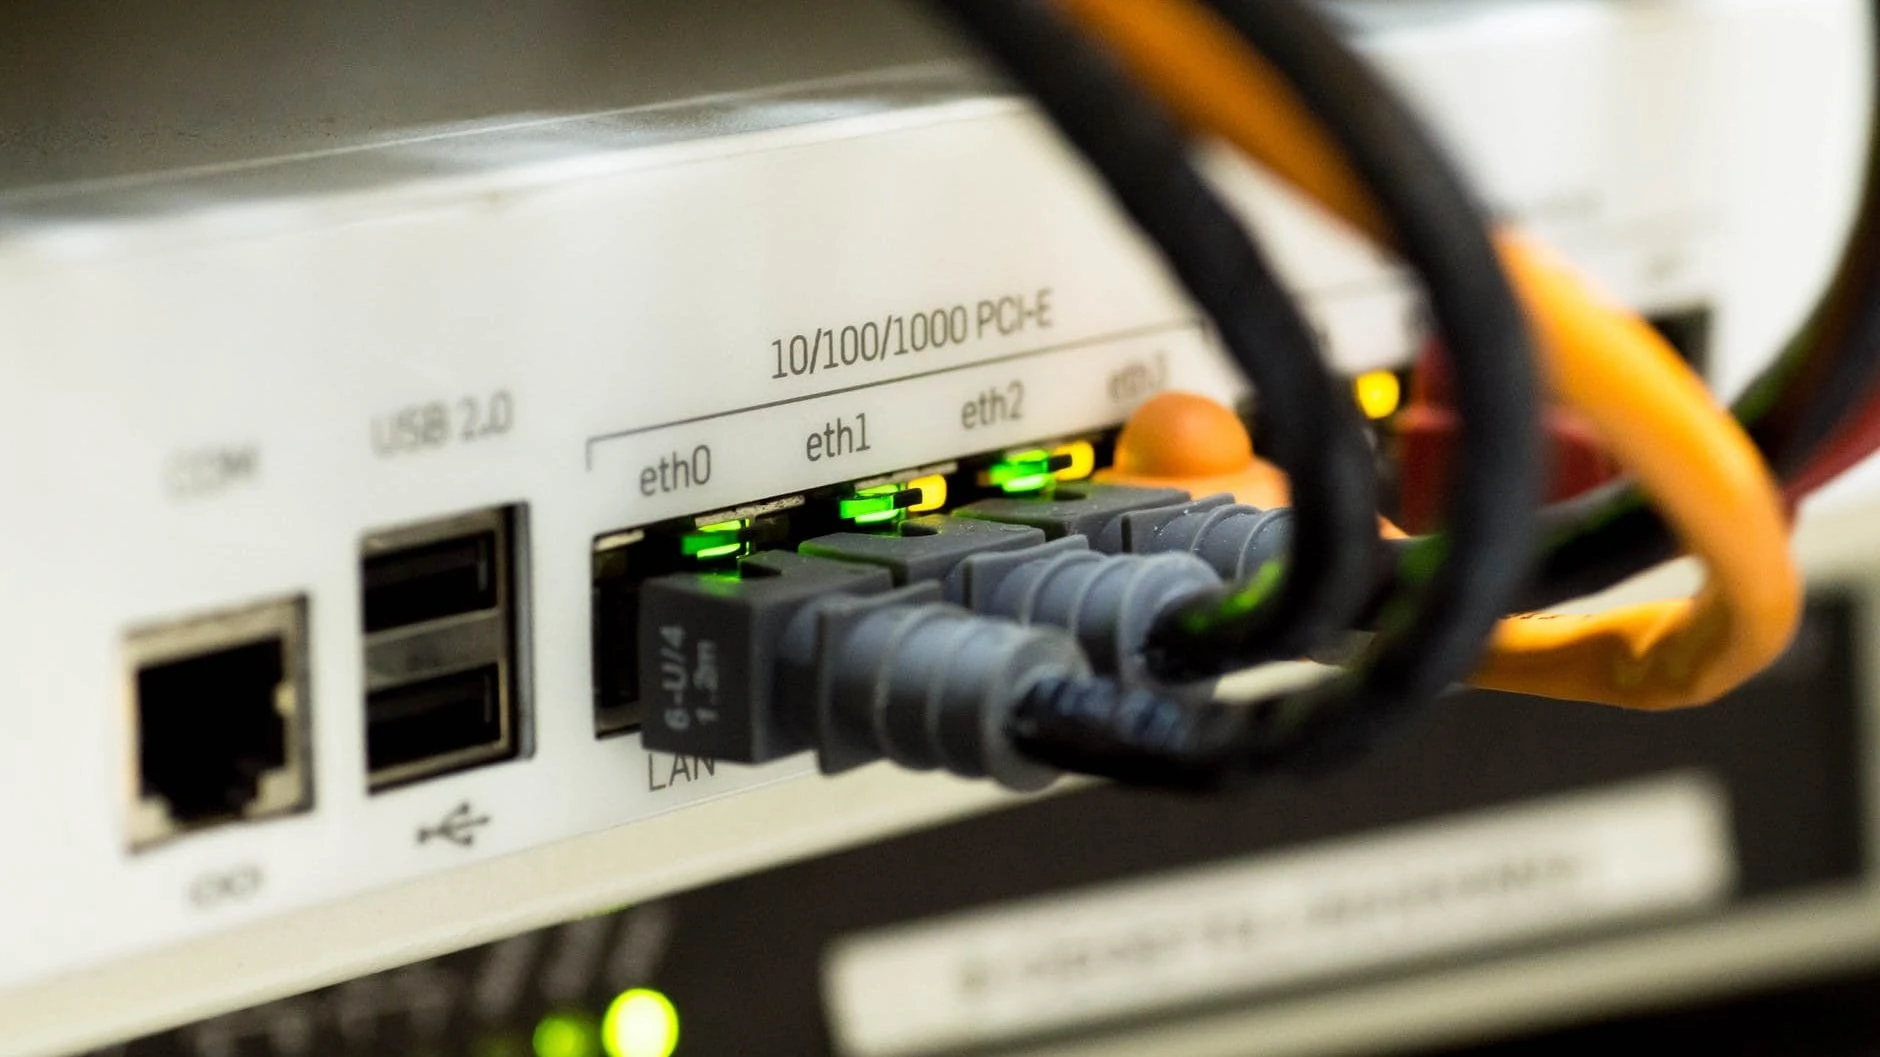 Ethernet invoerpoorten in beeld